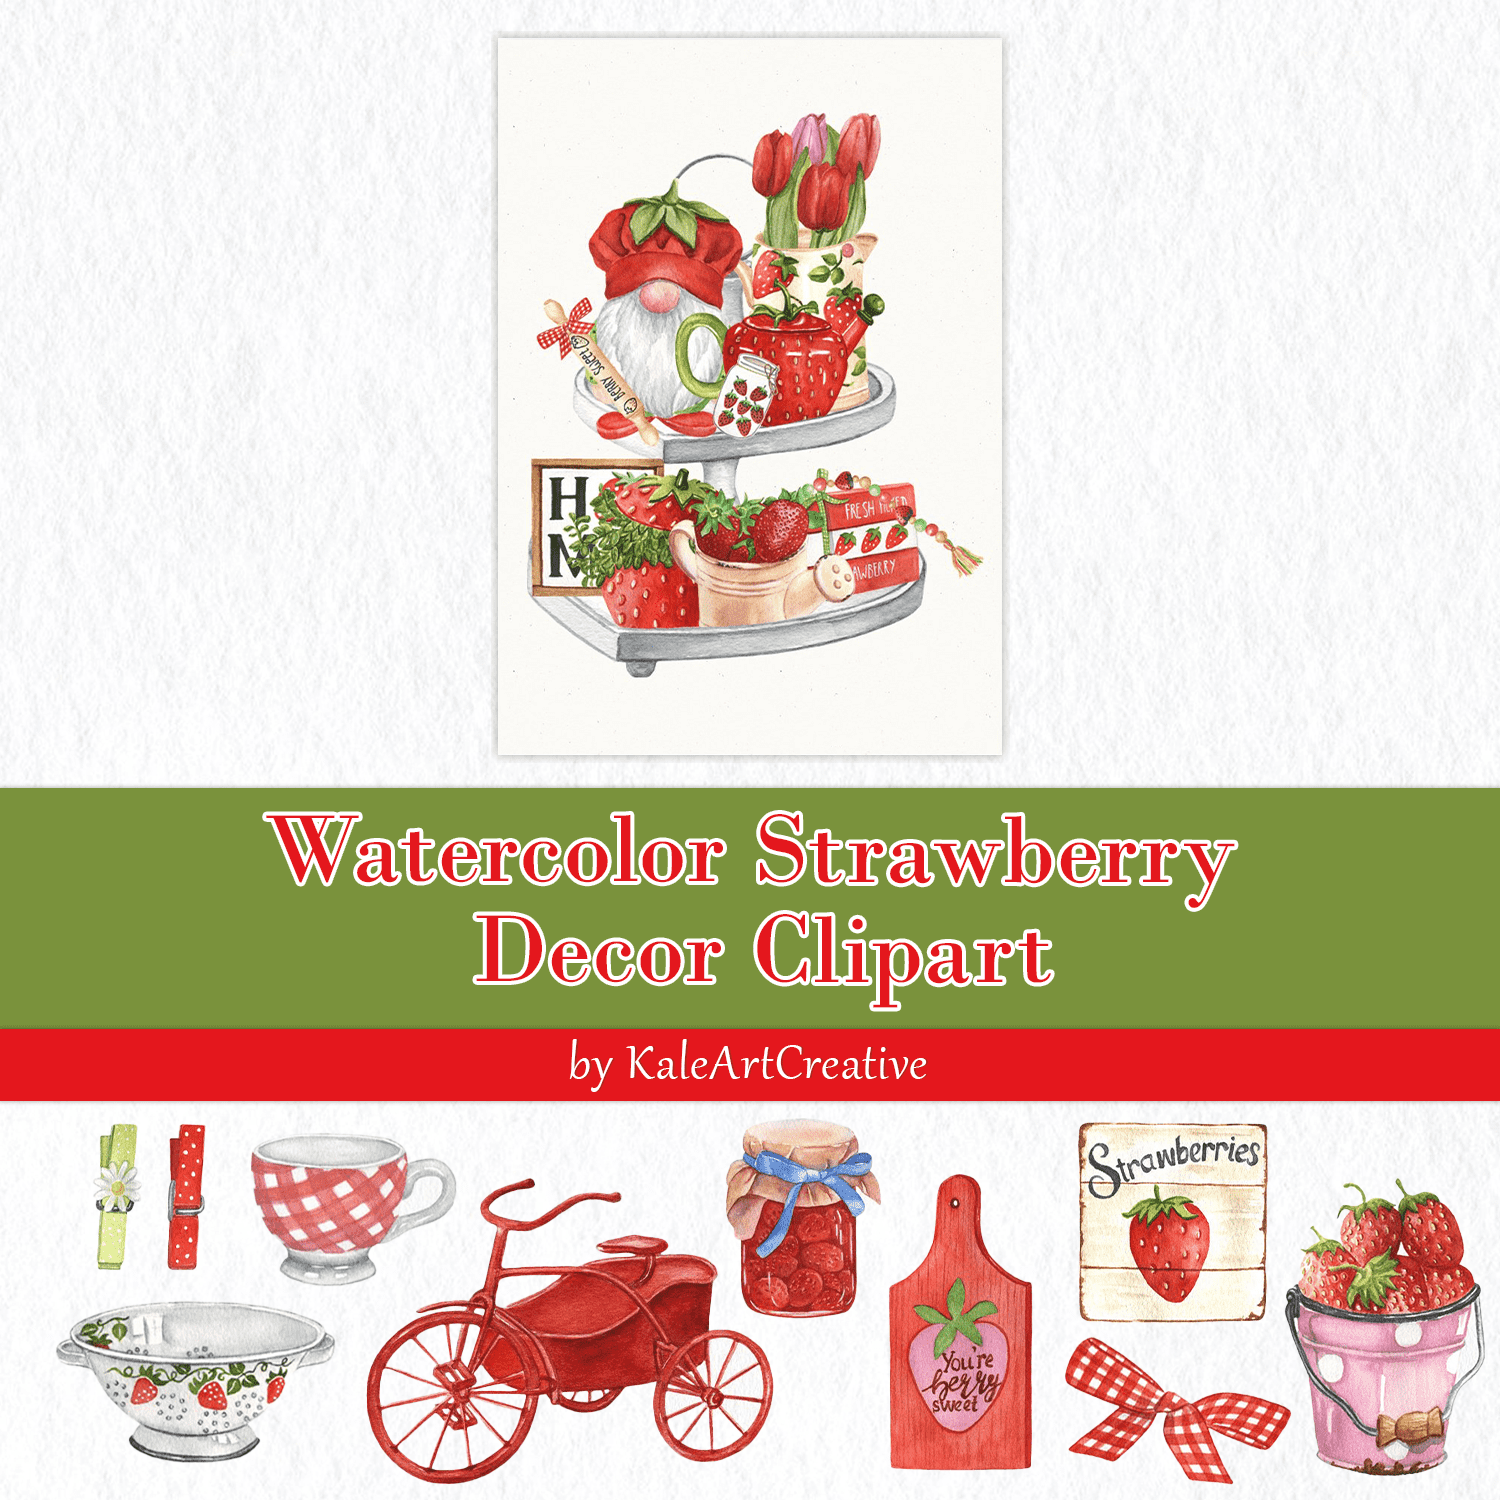 Watercolor Strawberry Decor Clipart. Farmhouse Kitchen Decor Cover.